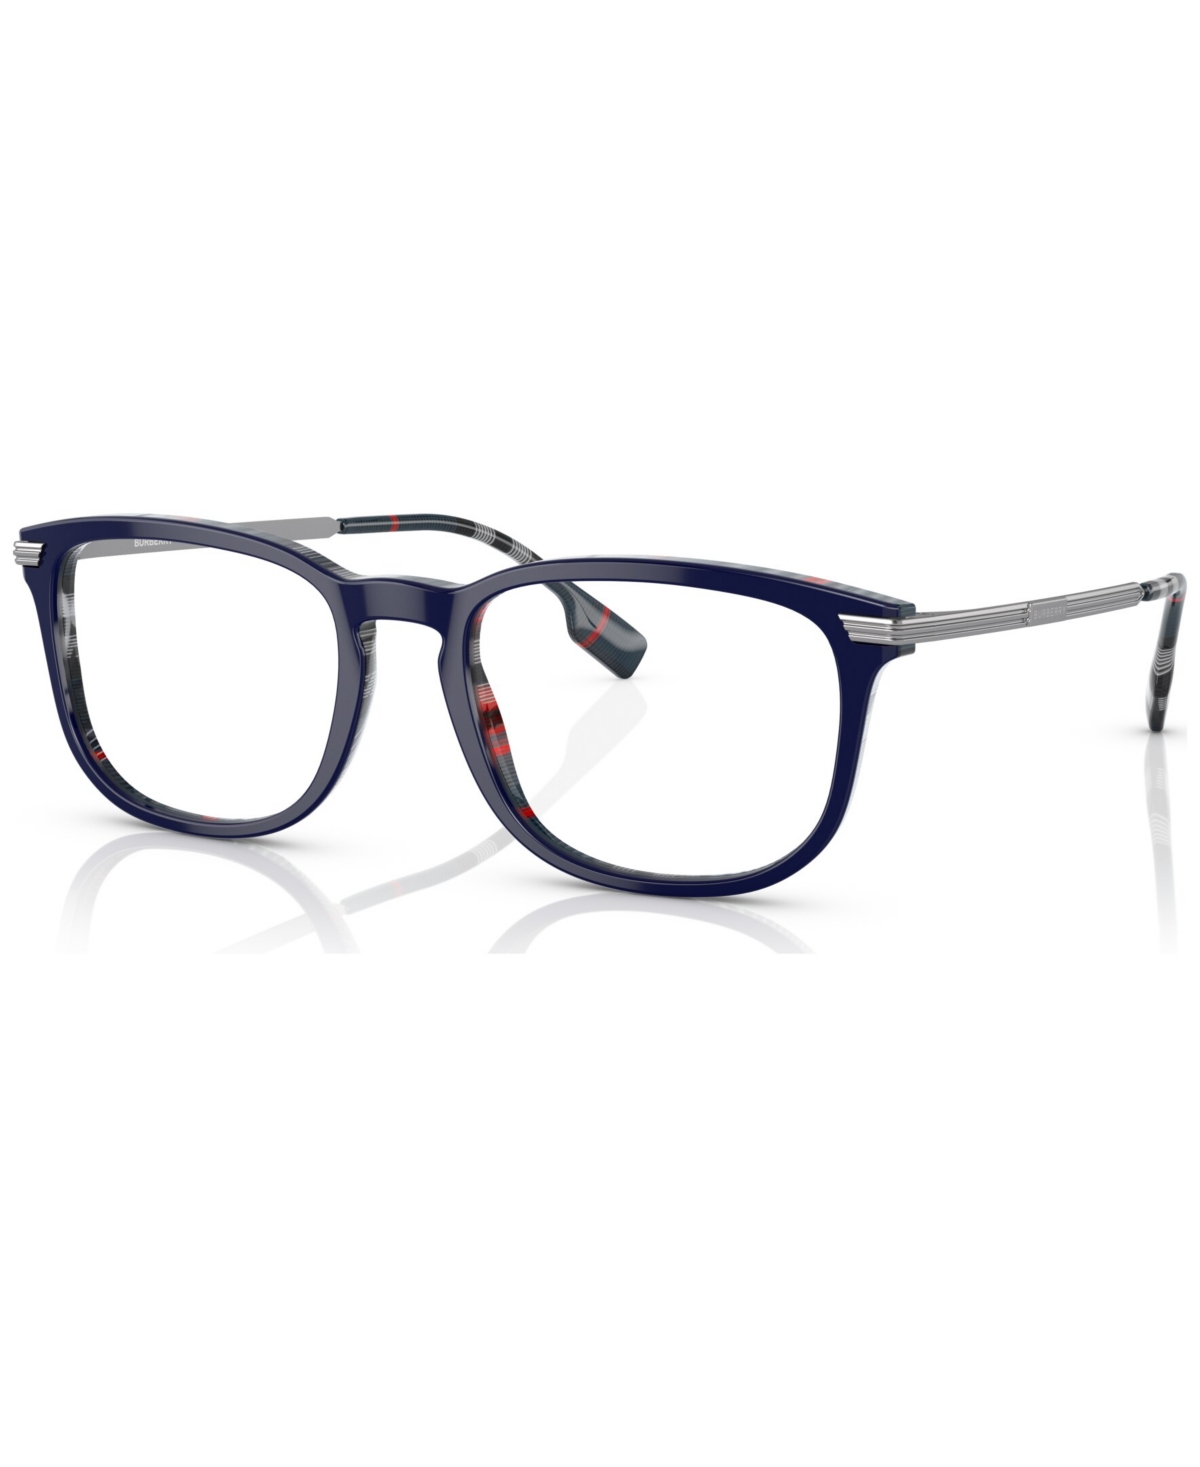 Men's Rectangle Eyeglasses, BE236954-o - Gray